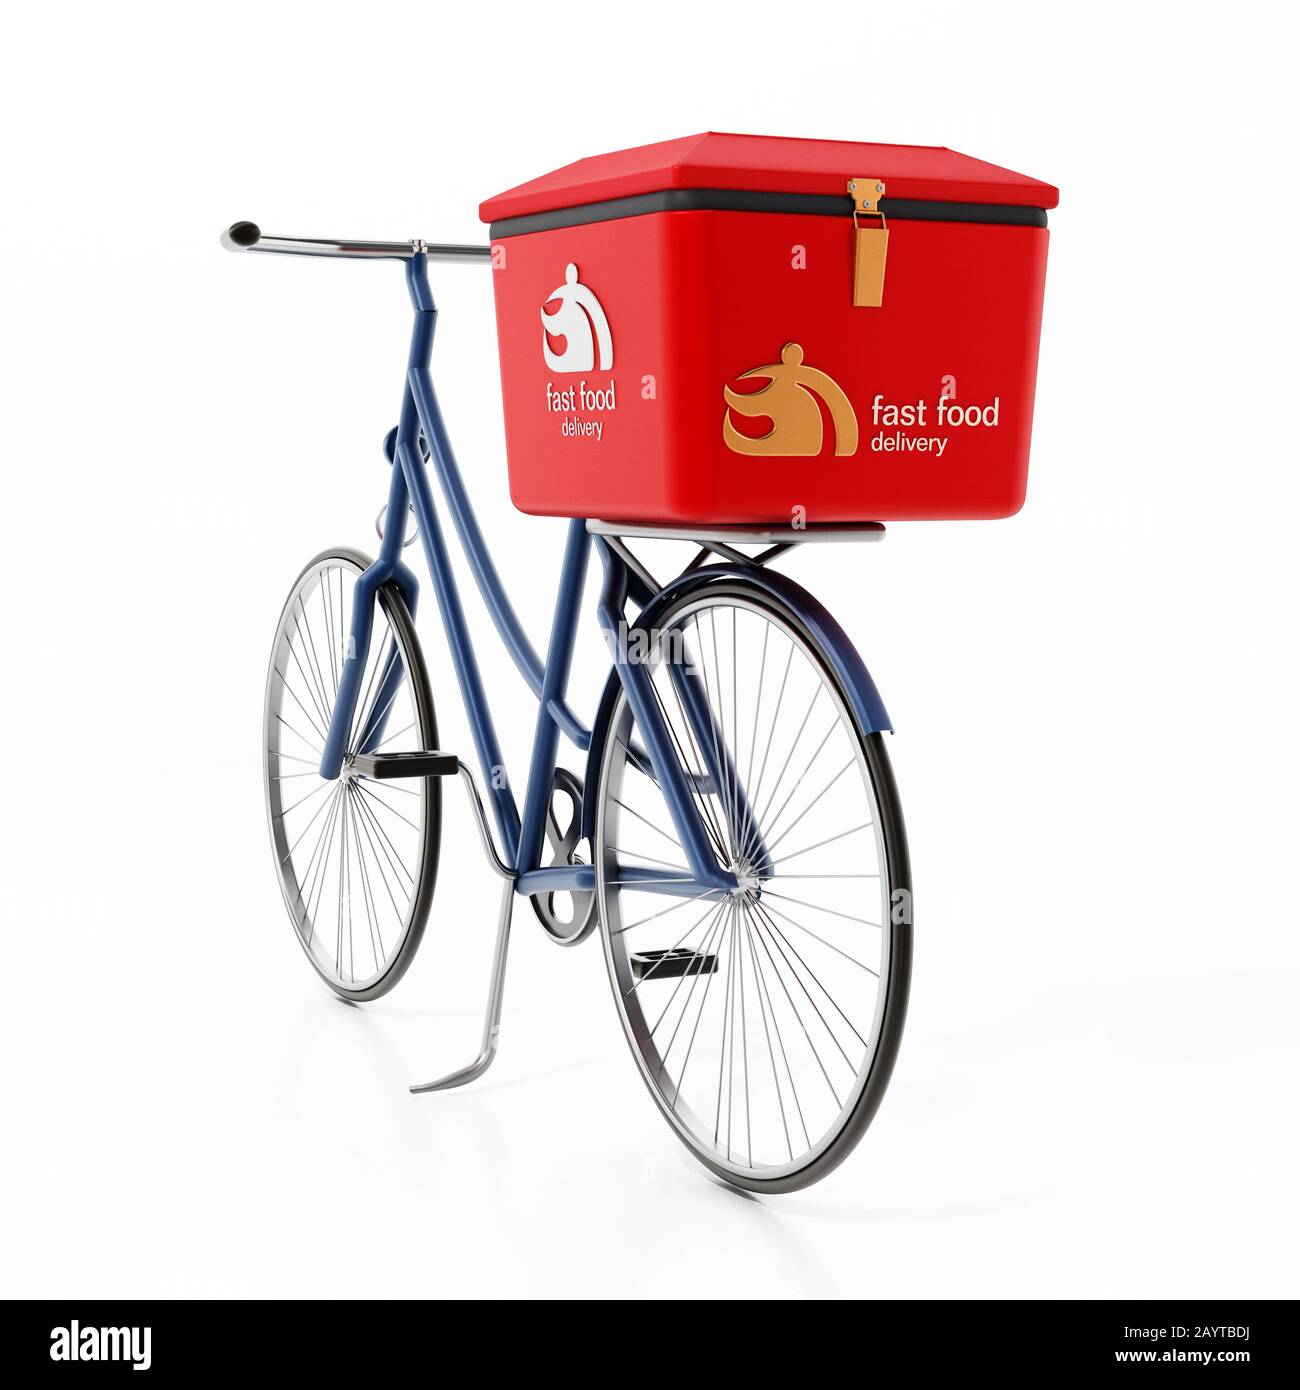 Bicicleta de entrega rápida de alimentos aislada sobre fondo blanco. Ilustración 3D. Foto de stock